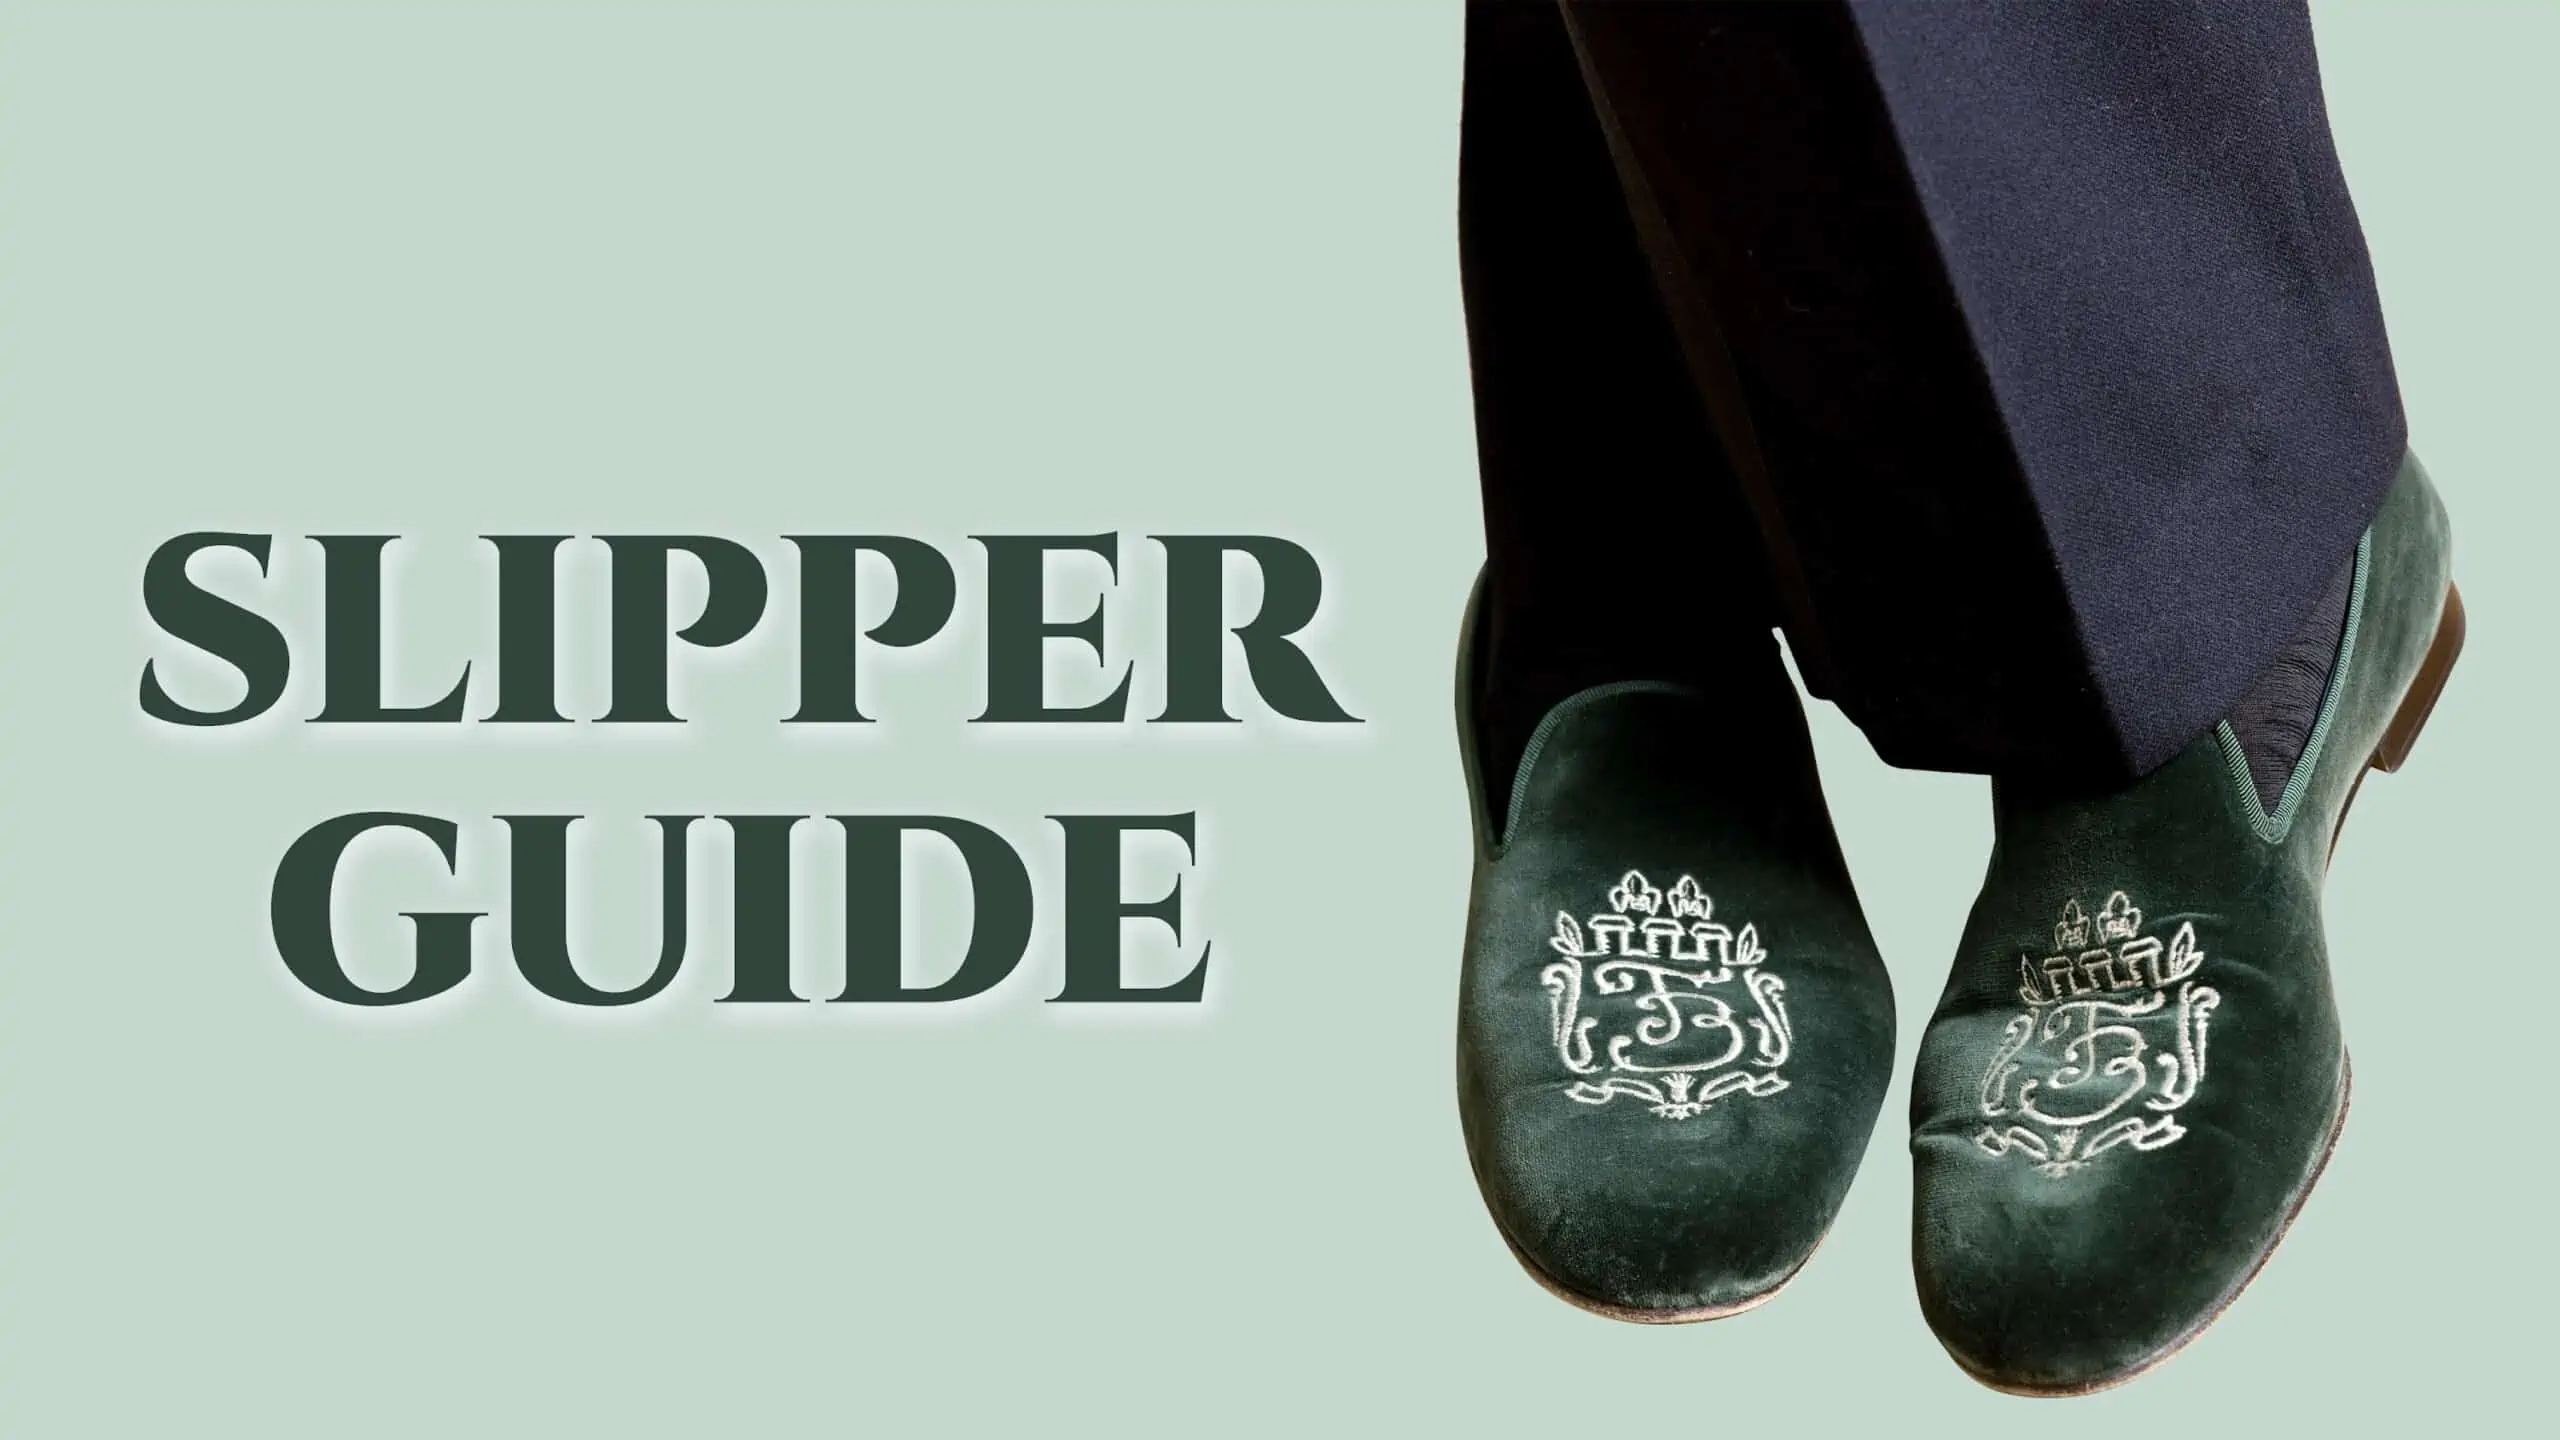 slipper guide 3840x2160 scaled